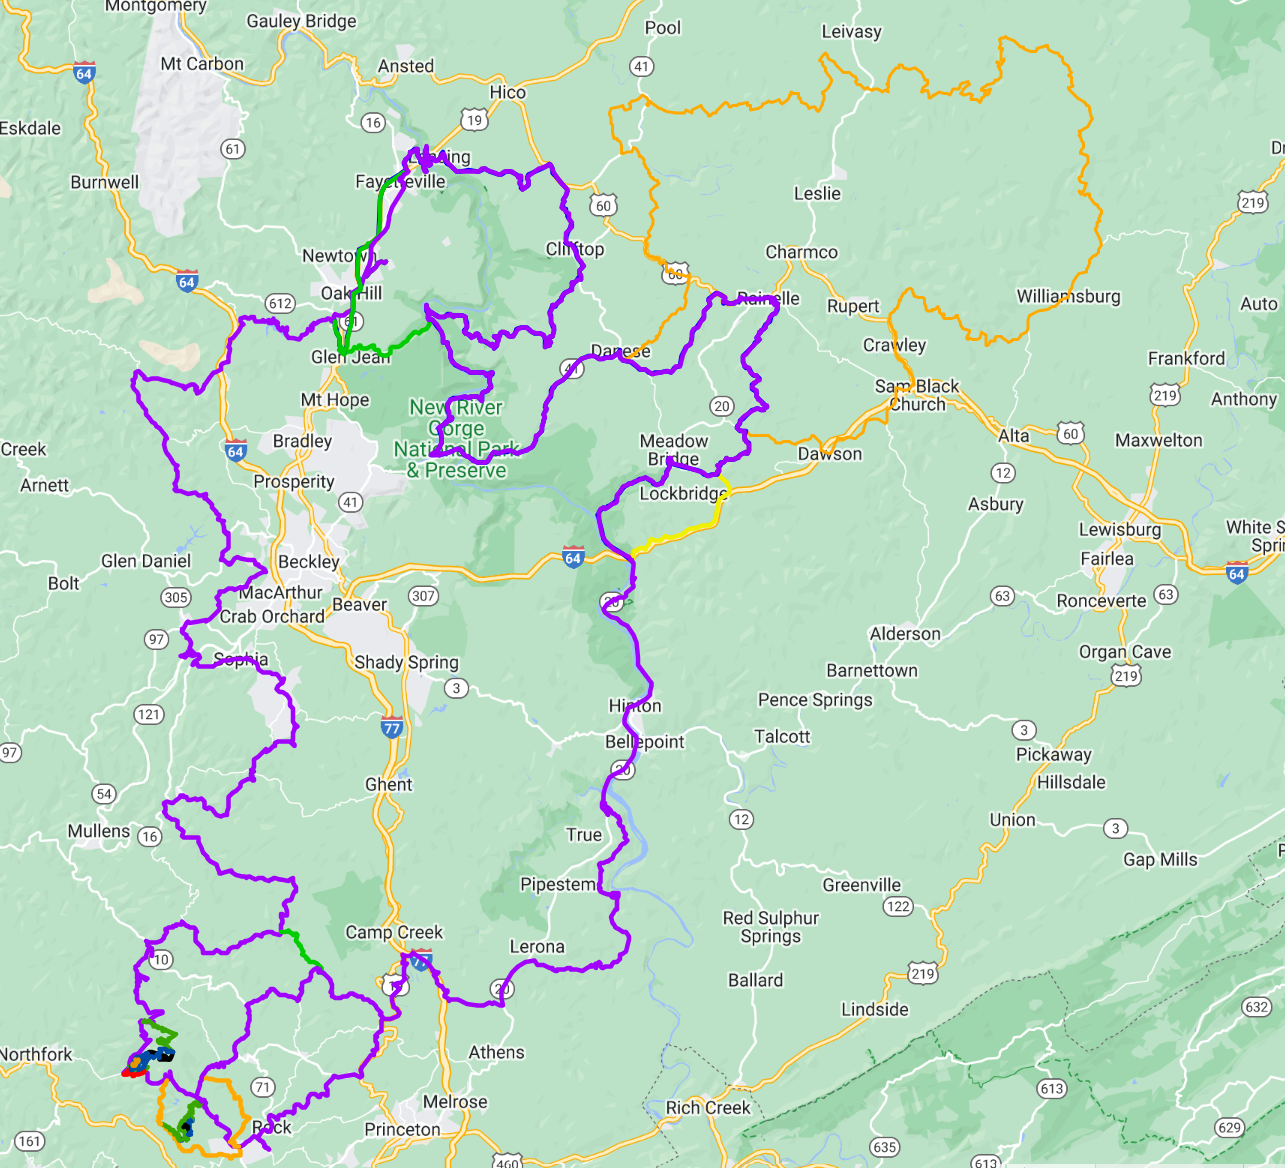 Tour de Coalfields - West Virginia - Tracks [Digital]